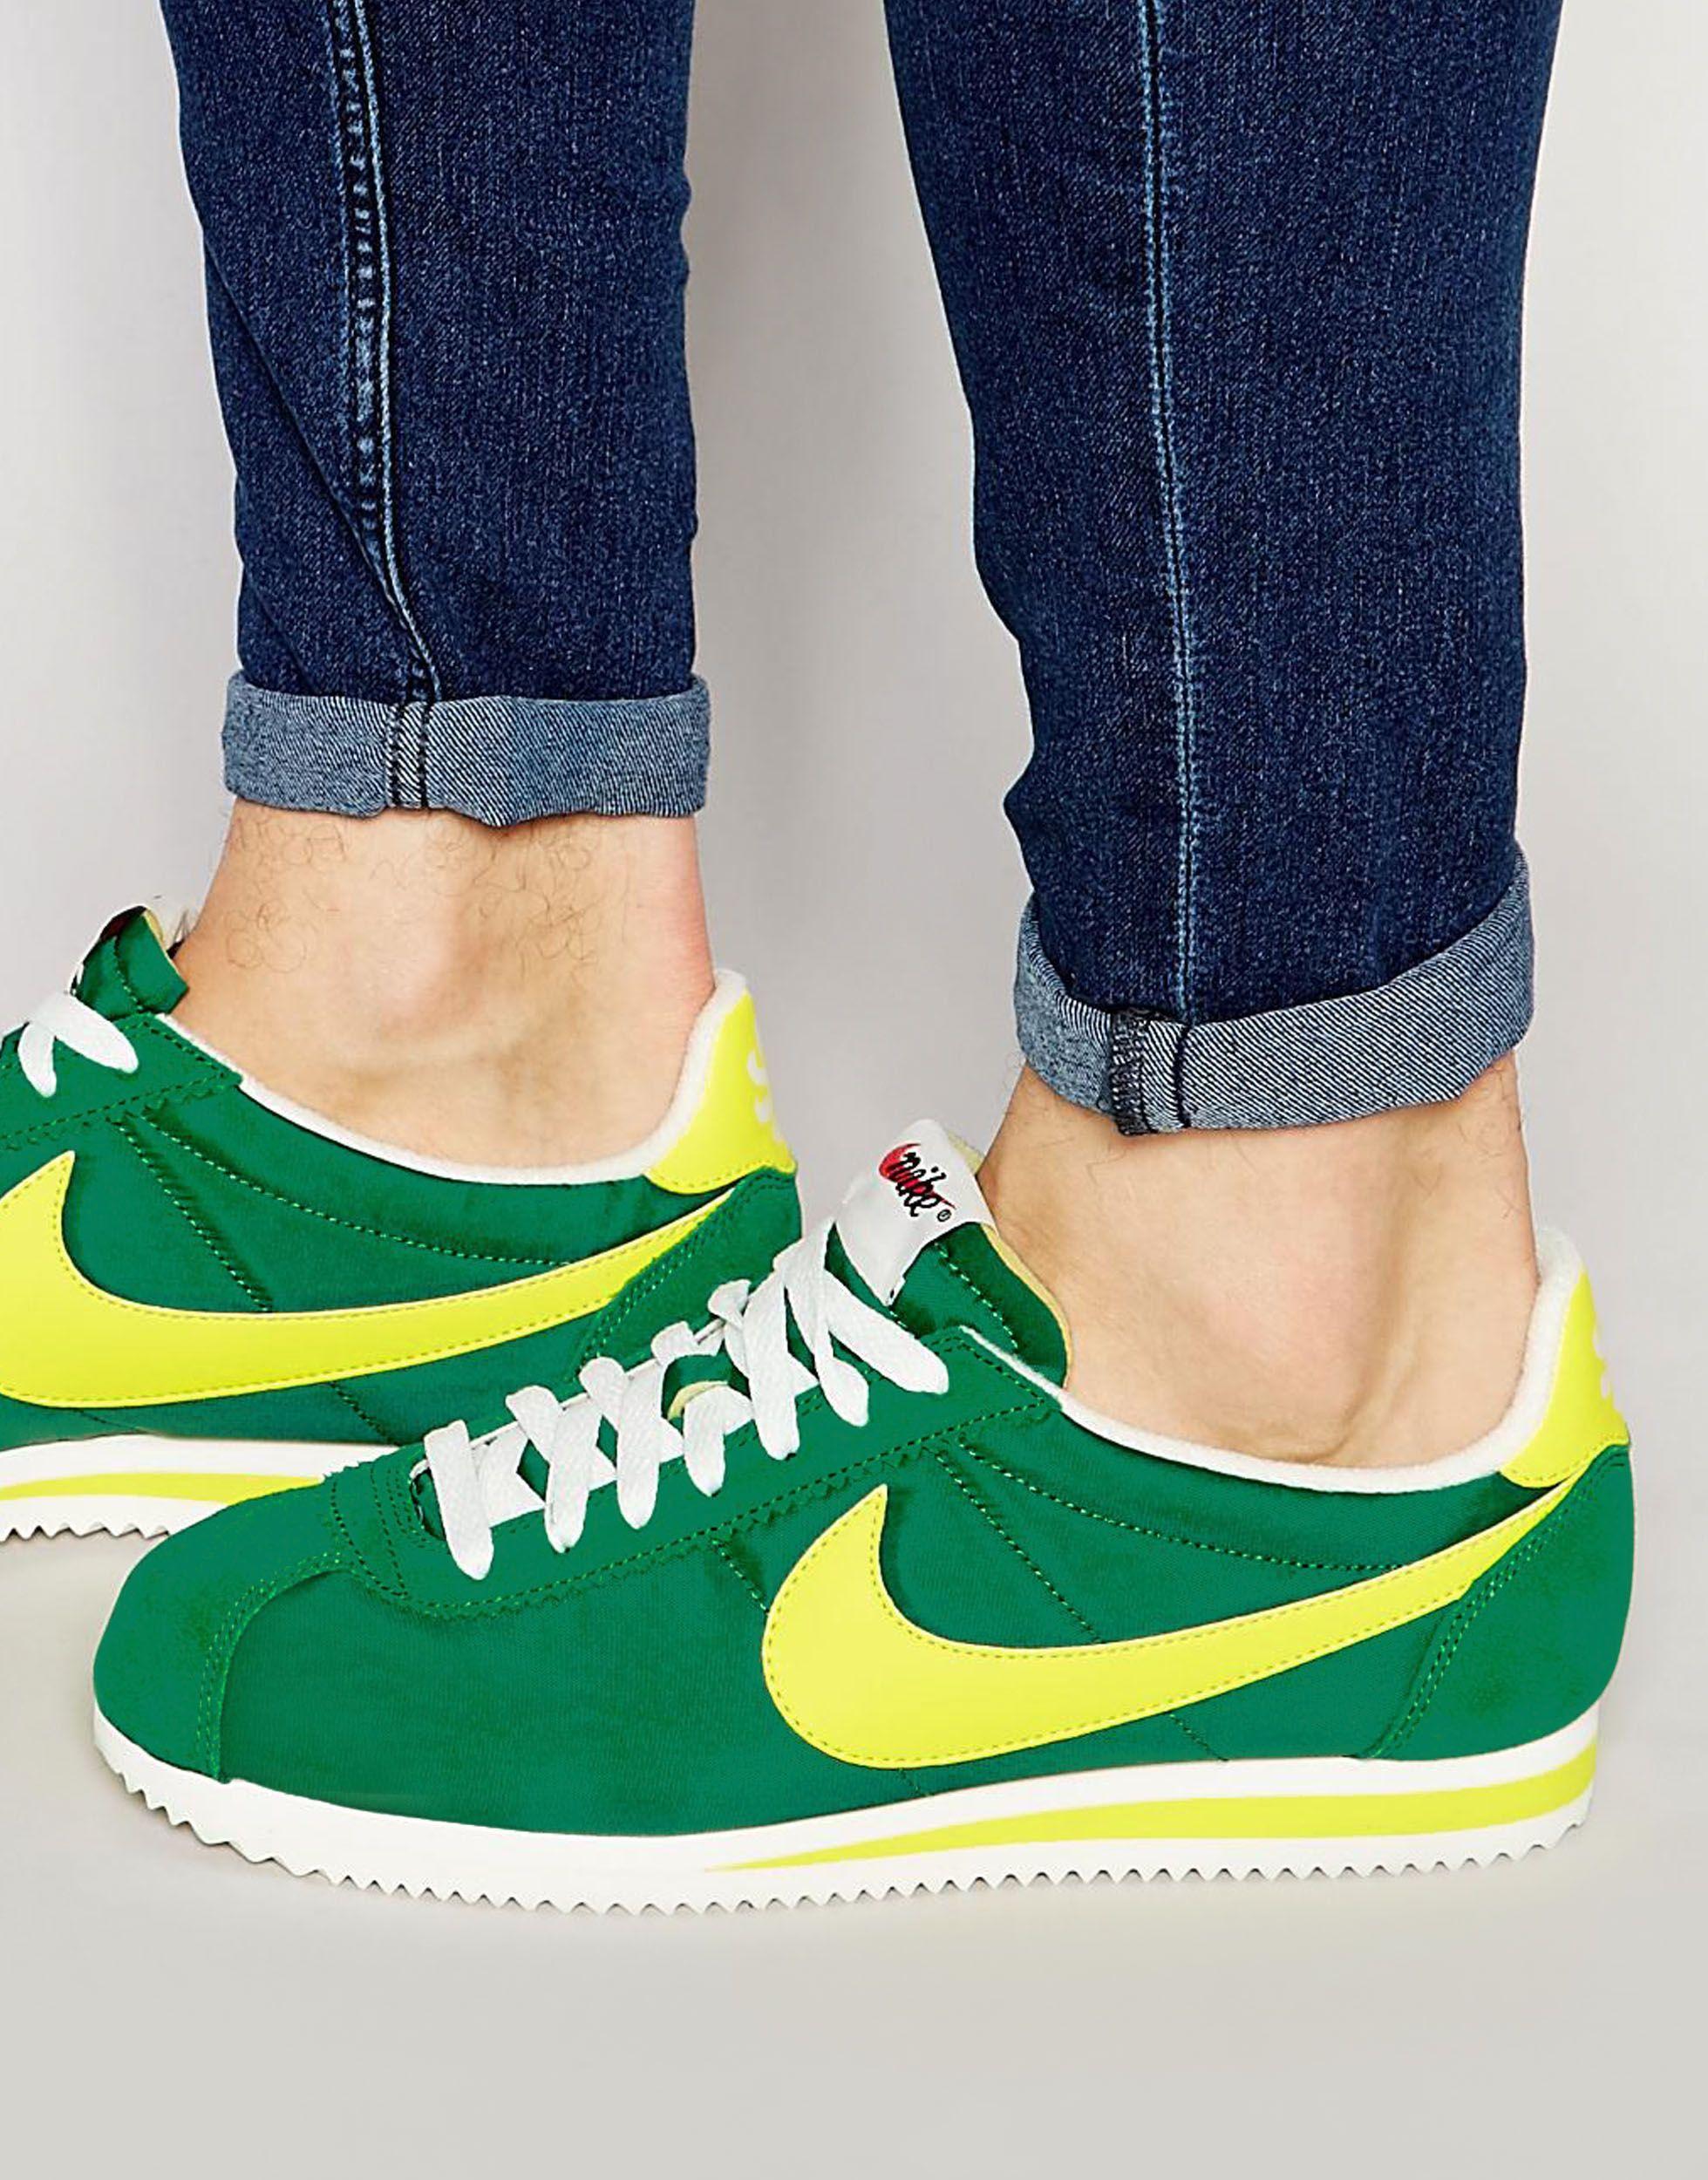 Кроссовки nike green. Зелёные Cortez найк. Nike Cortez зеленые. Nike Cortez nylon зеленые. Найк Кортес 2022.